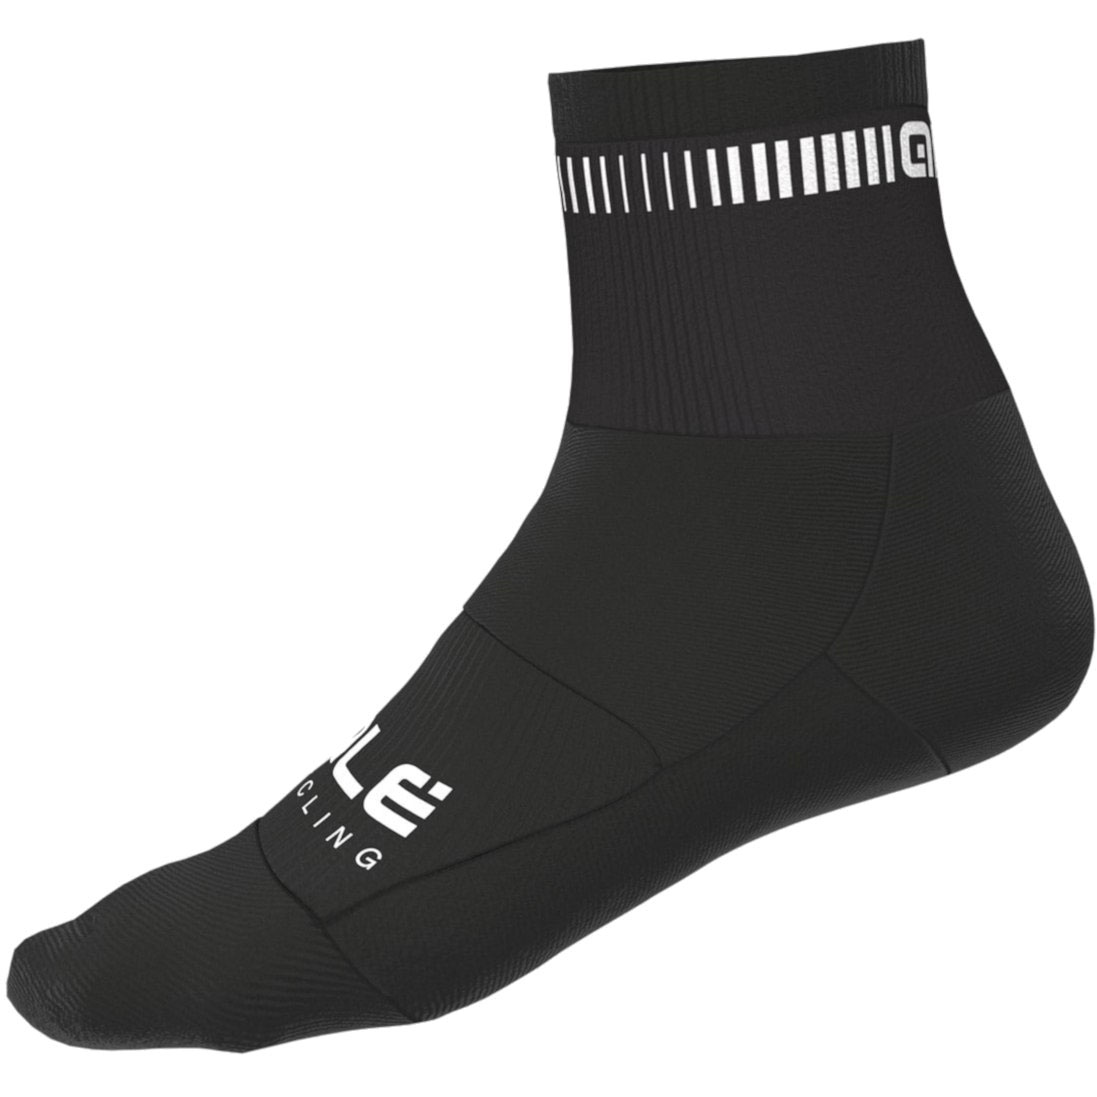 Produktbild von Alé Logo Socken - schwarz/weiß